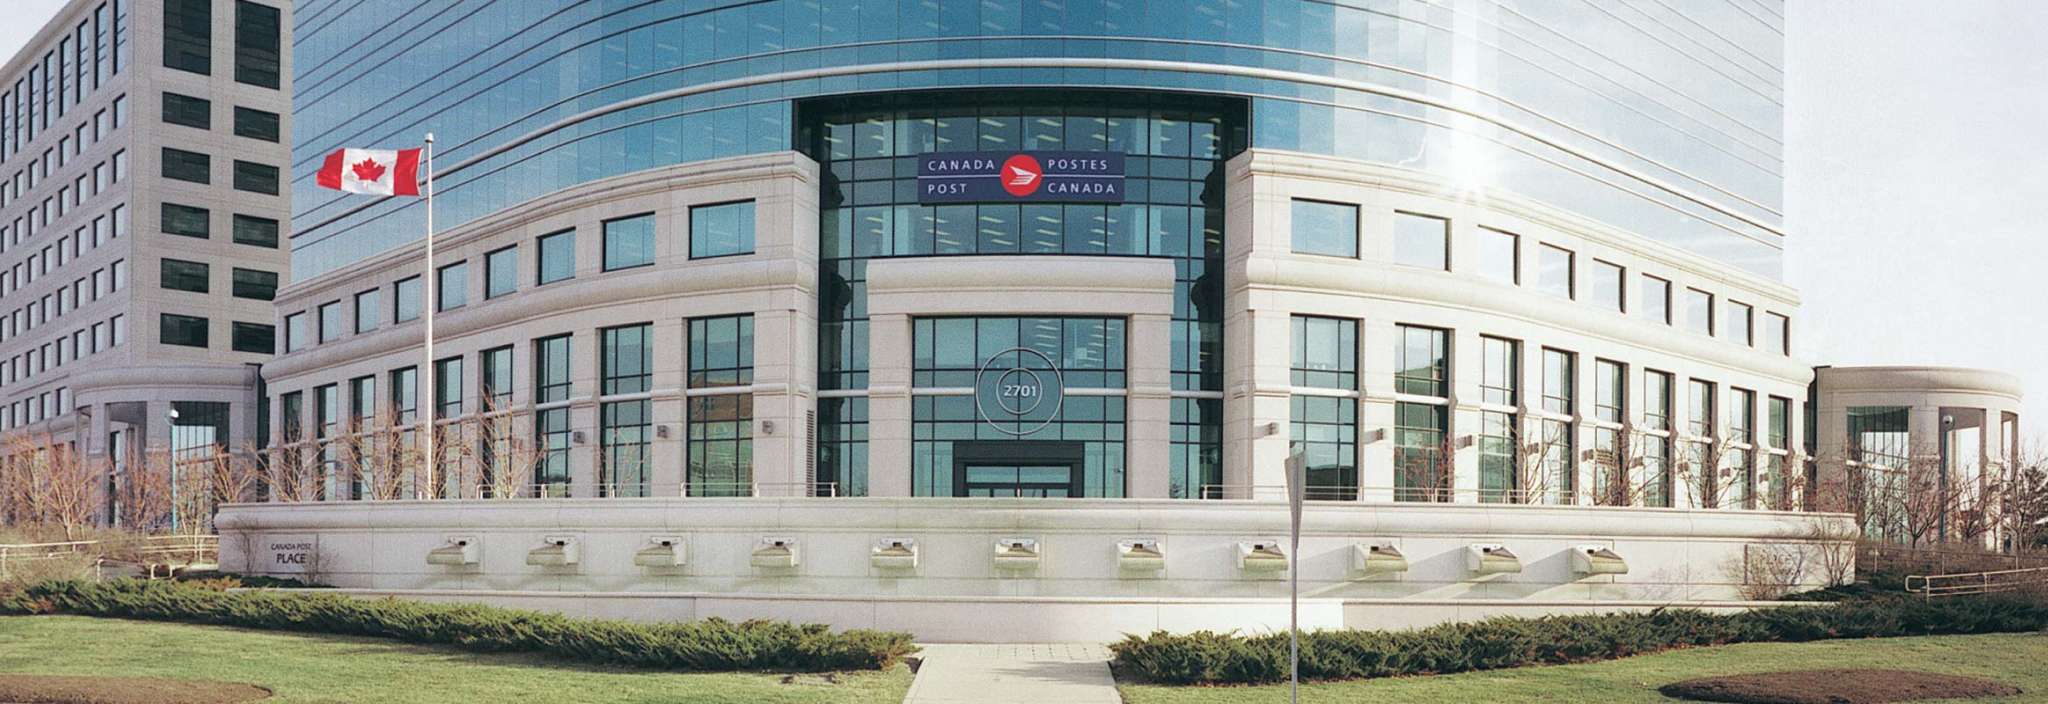 Un drapeau canadien flotte devant le siège social de Postes Canada. L’immeuble est doté de colonnes de granite et de grandes fenêtres